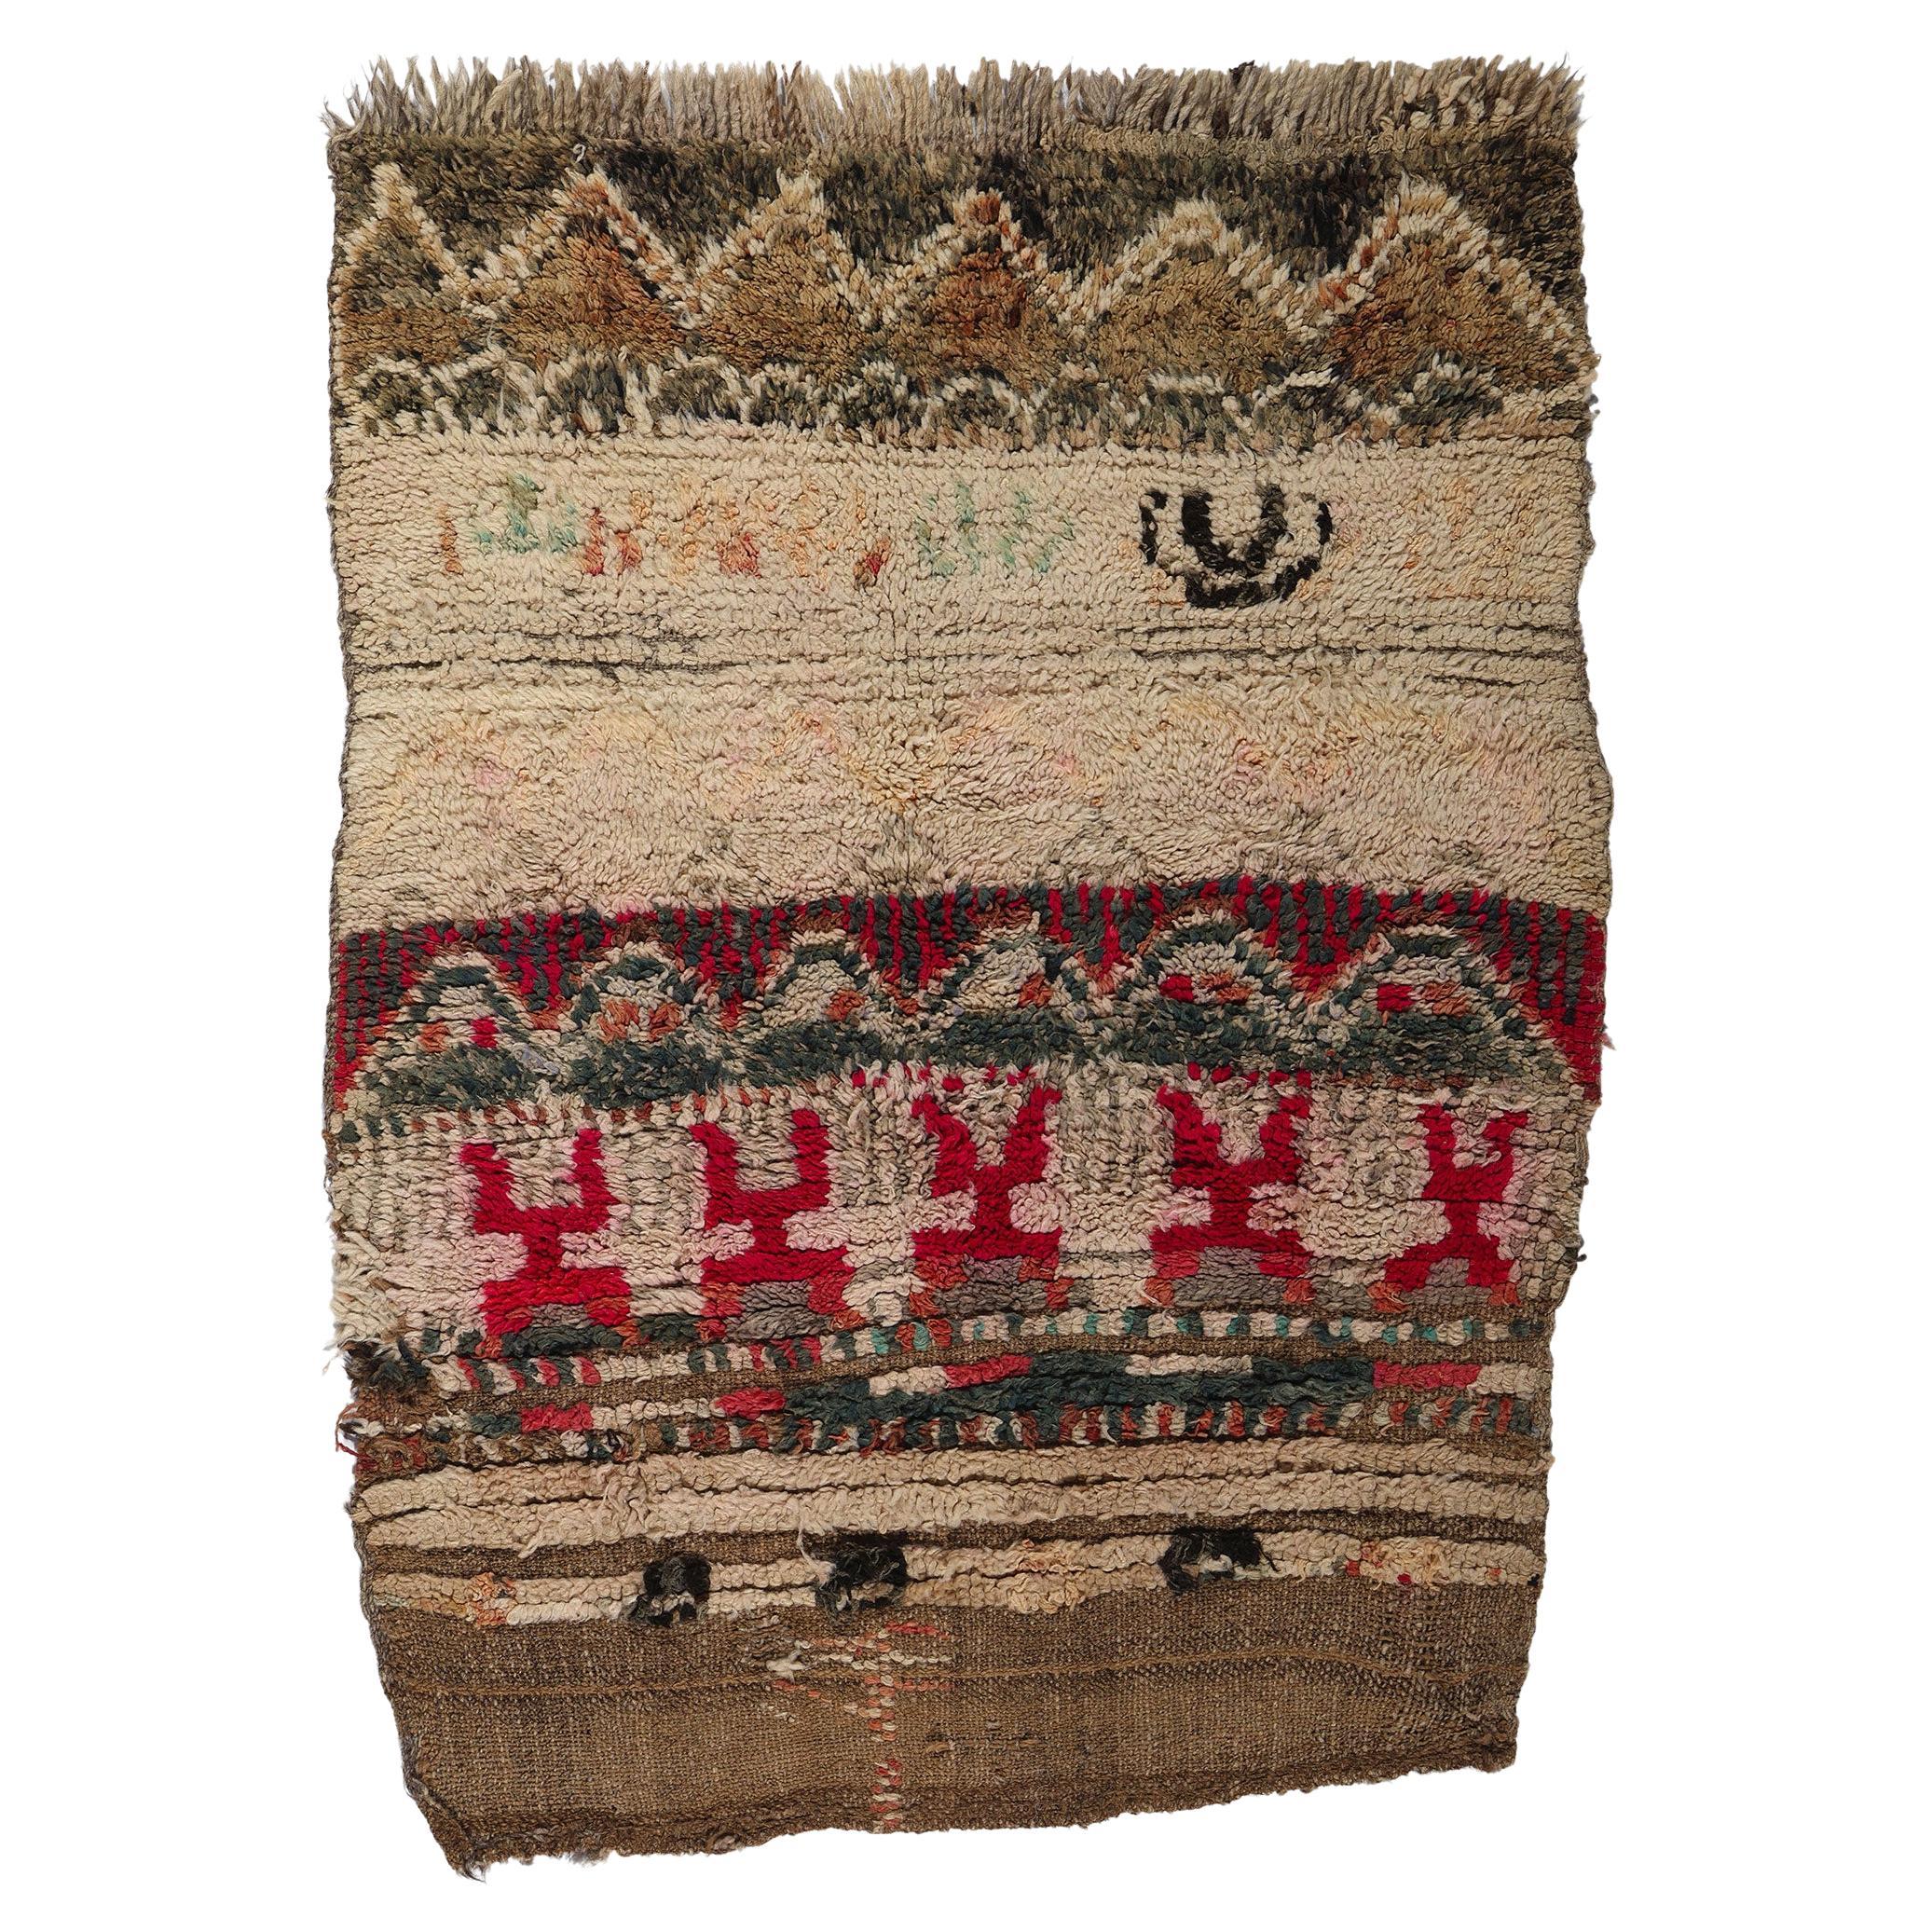 Brauner marokkanischer Boujad-Teppich im Vintage-Stil, rustikaler Boho-Chic trifft auf nomadischen Charme